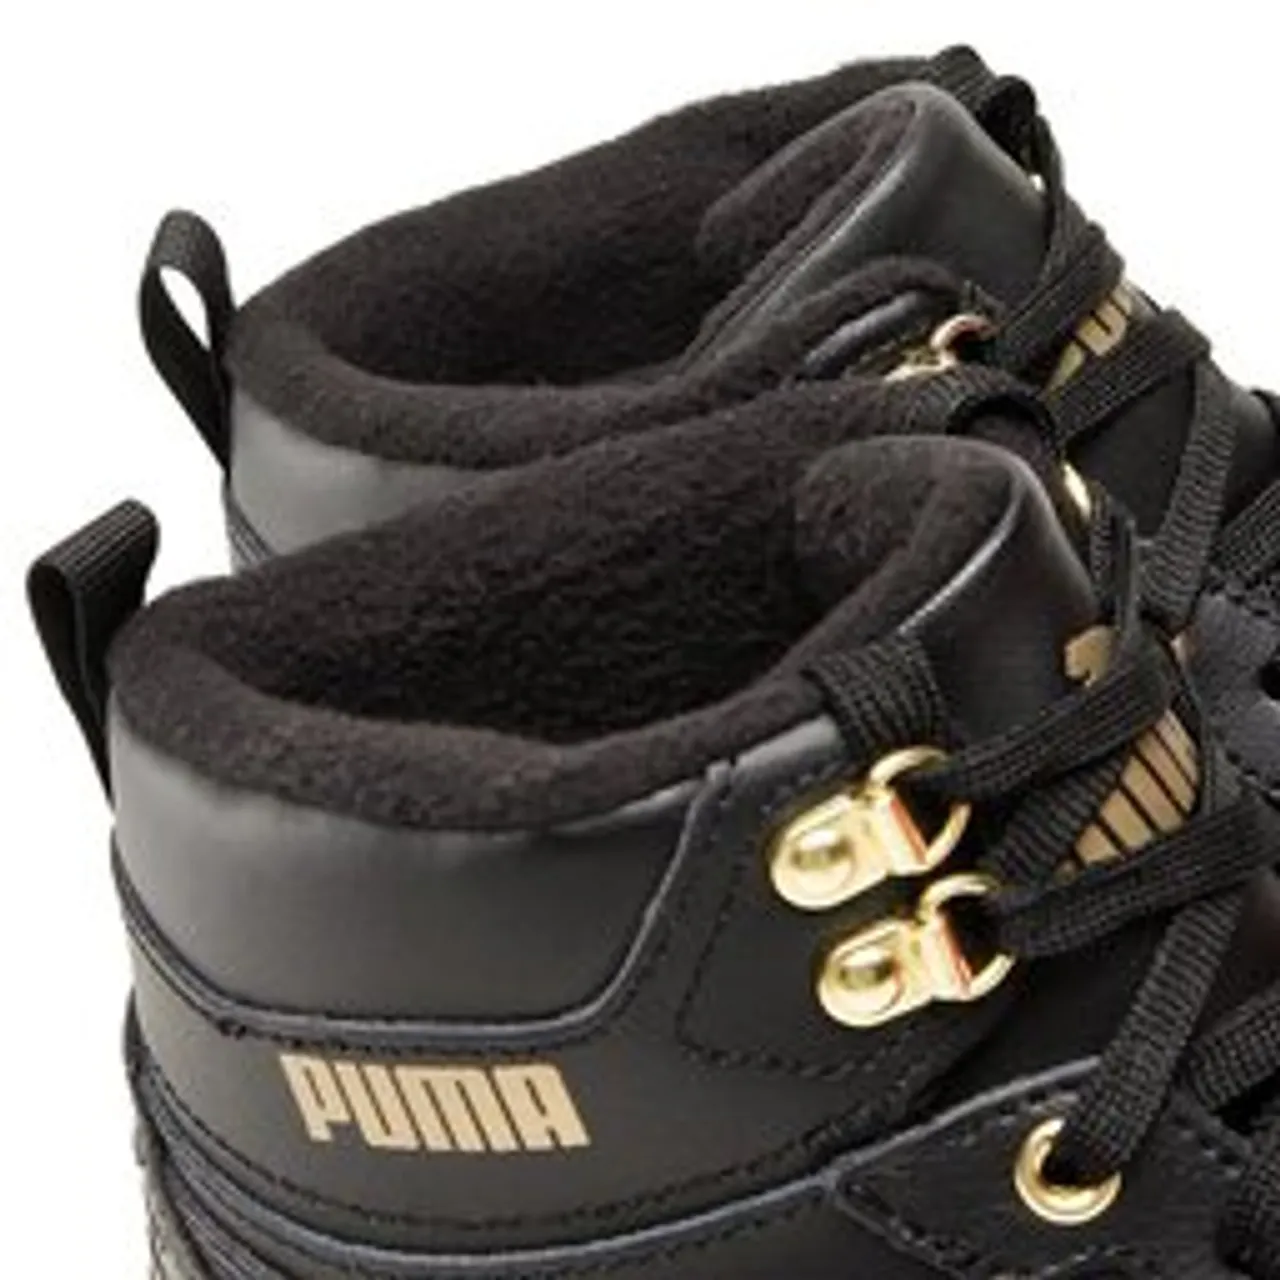 Sneakers Puma Rebound Rugged 387592 01 Black/Black/Puma Team Gold